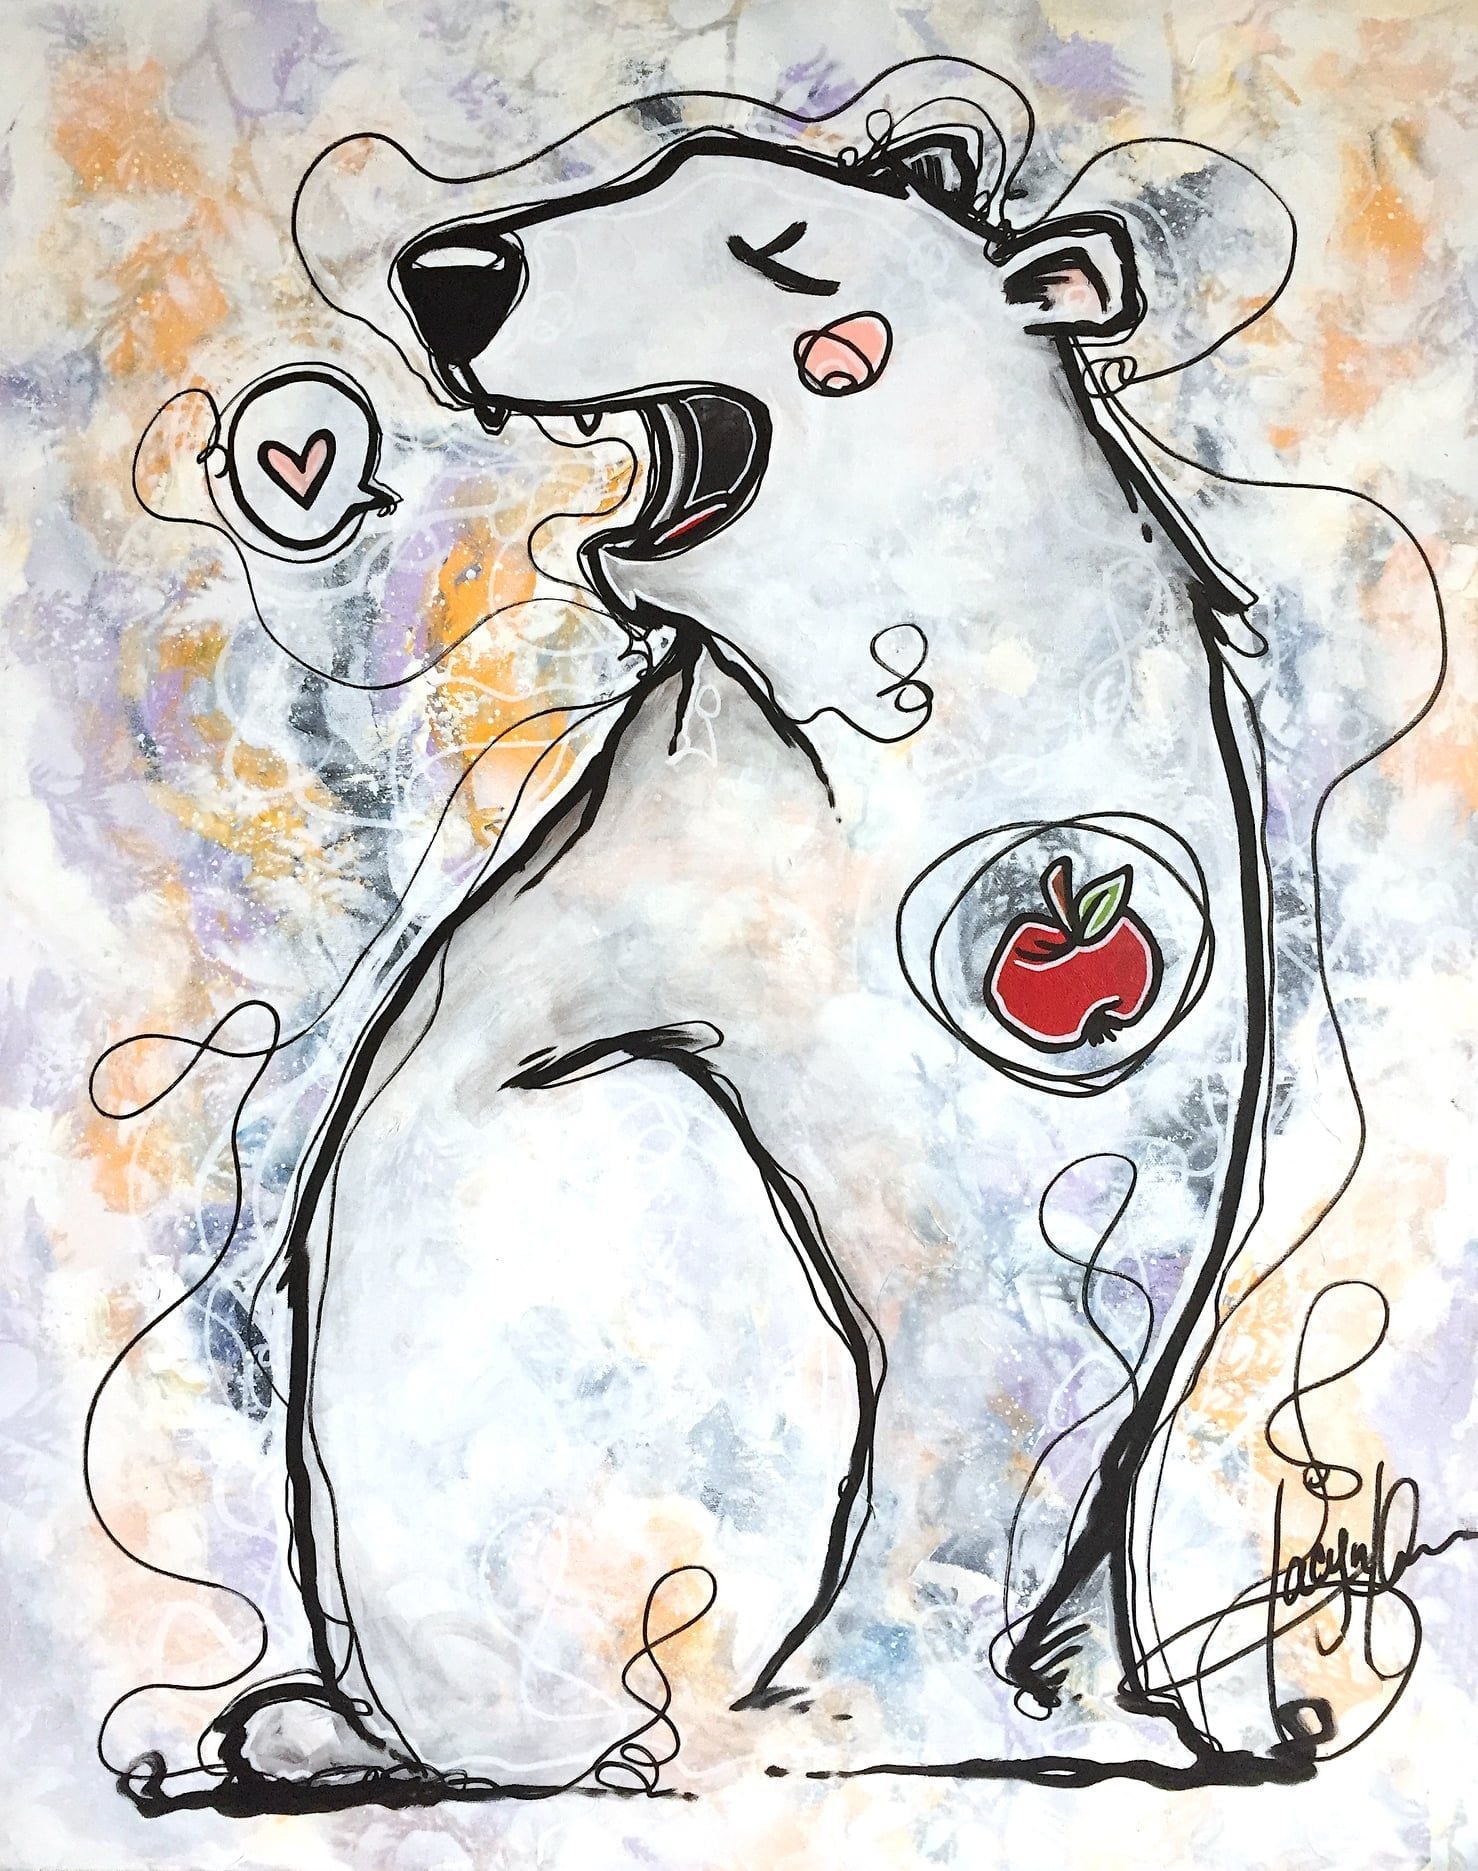 Tableau représentant un ours avec une pomme à la place du cœur